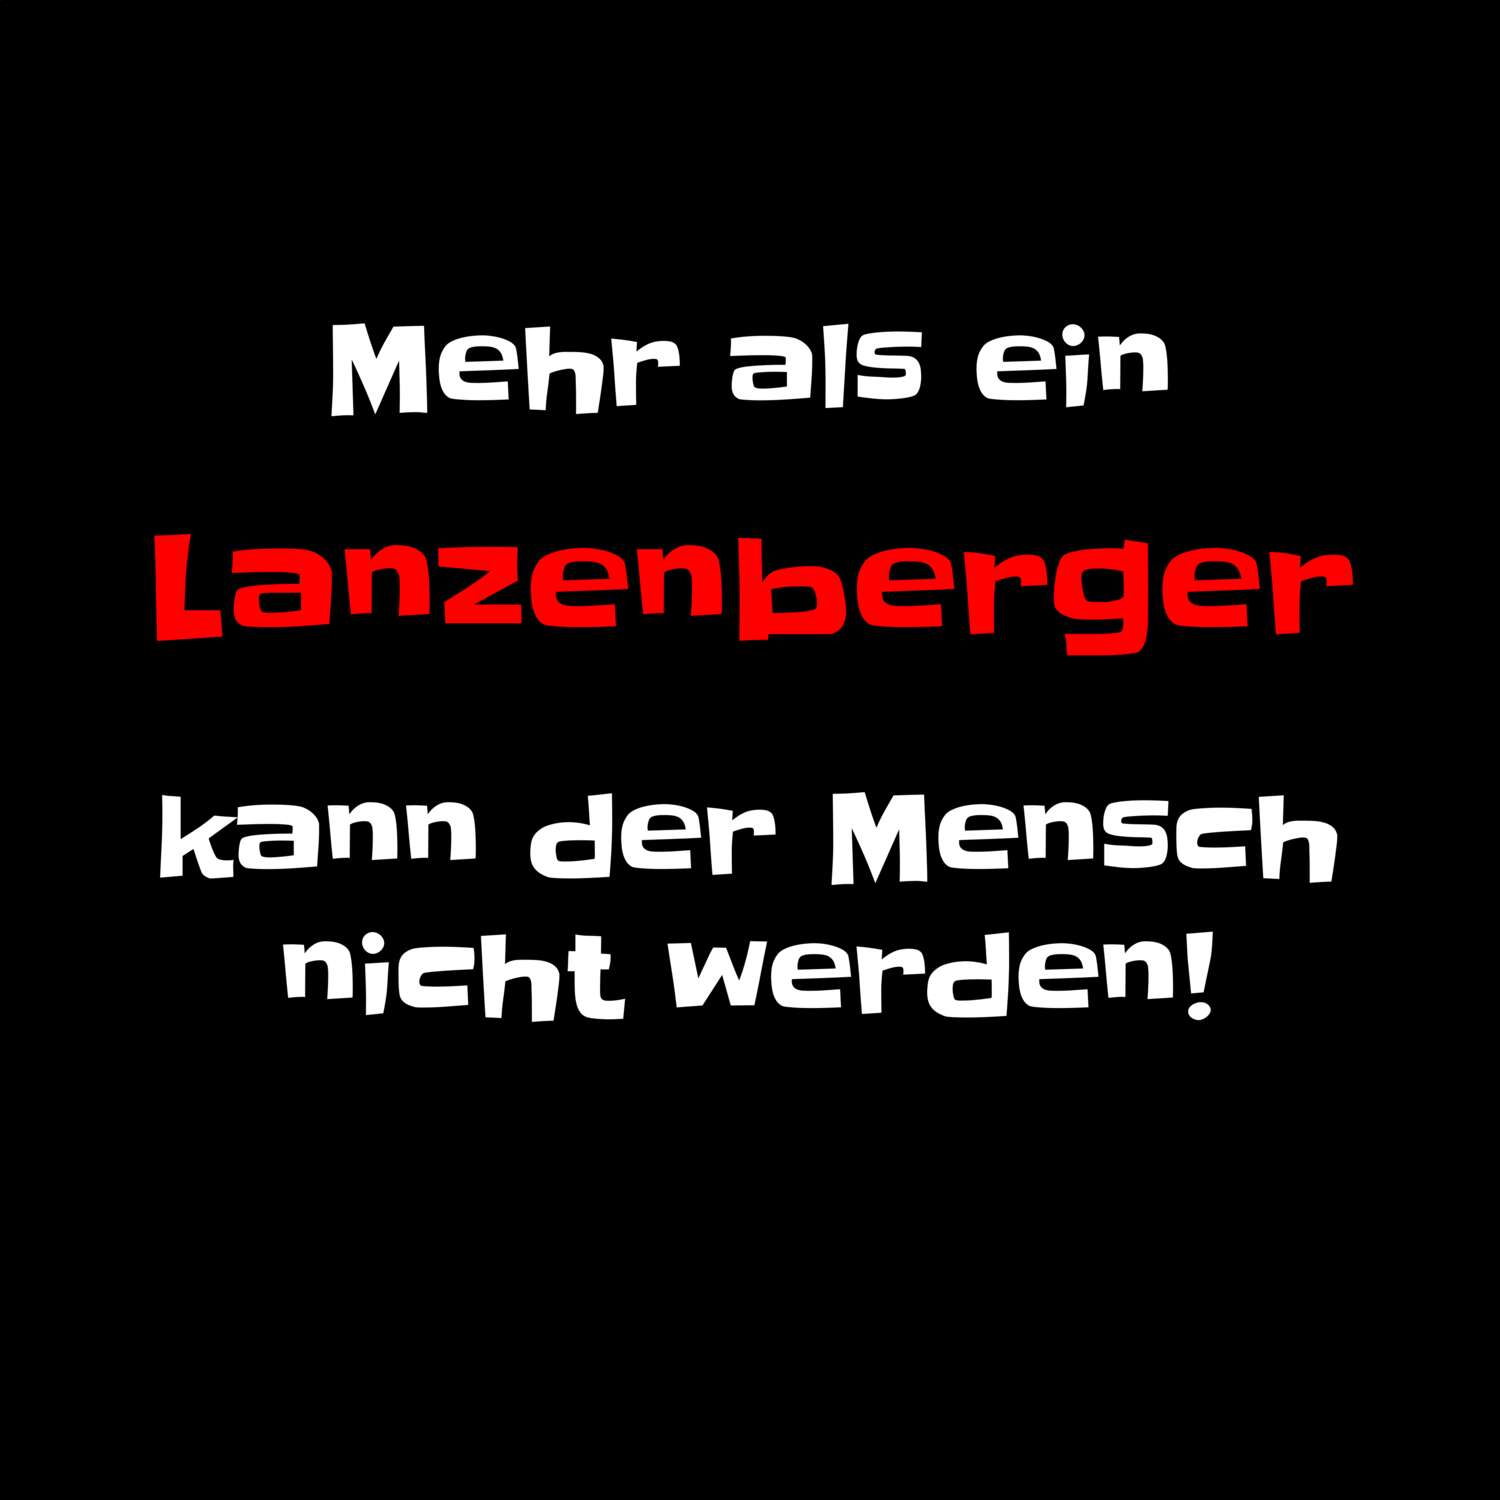 Lanzenberg T-Shirt »Mehr als ein«